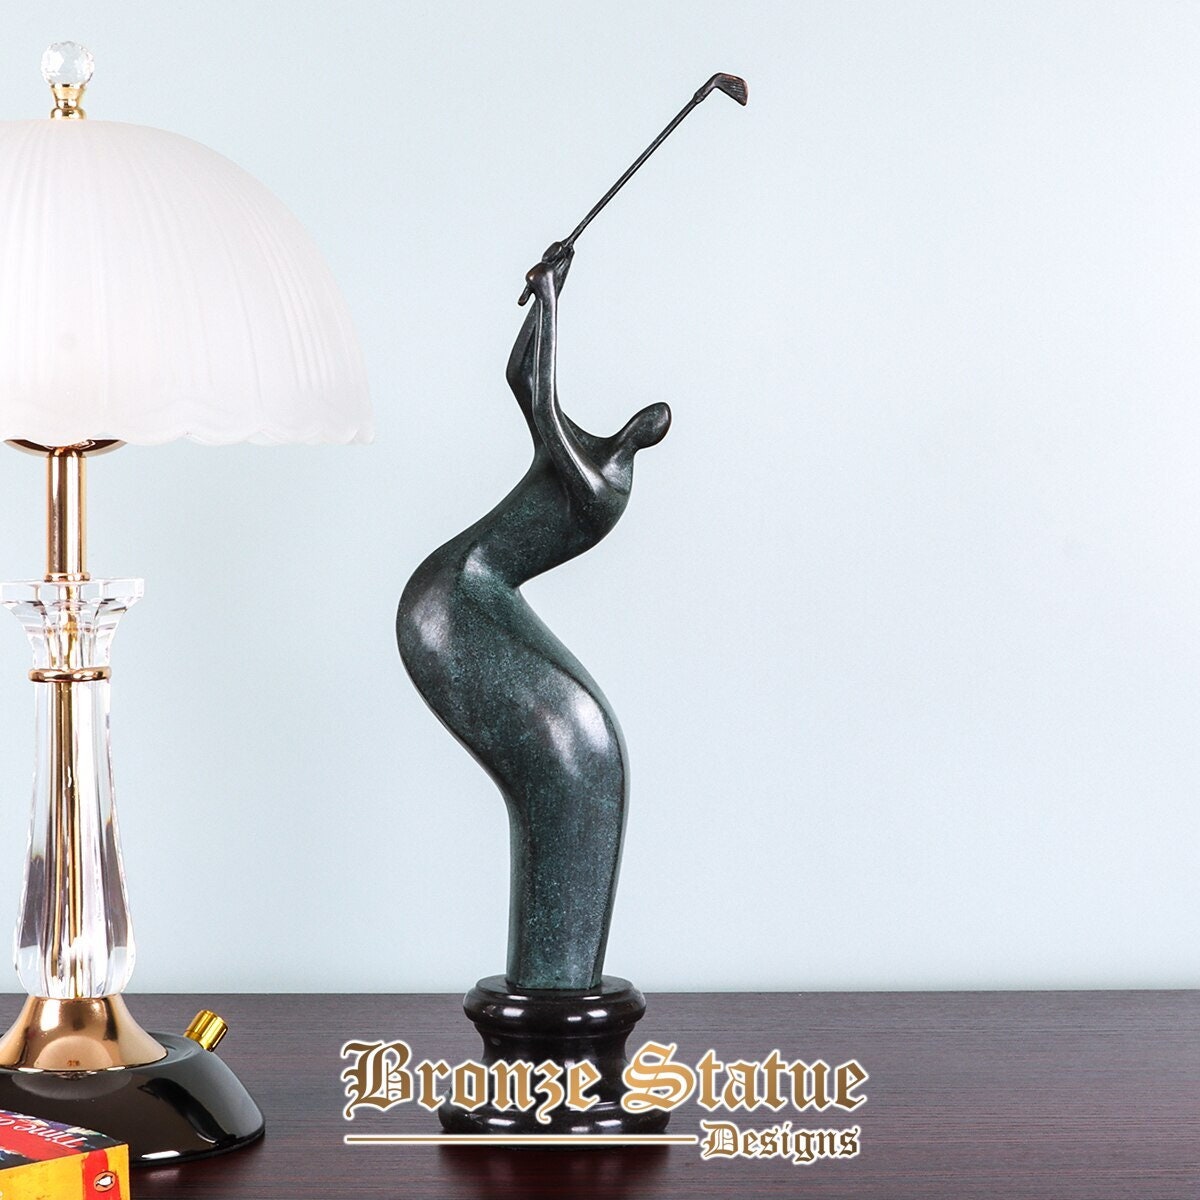 Bronze sculpture abstract golfer statue modern sport figurine art dark green office table decor gift